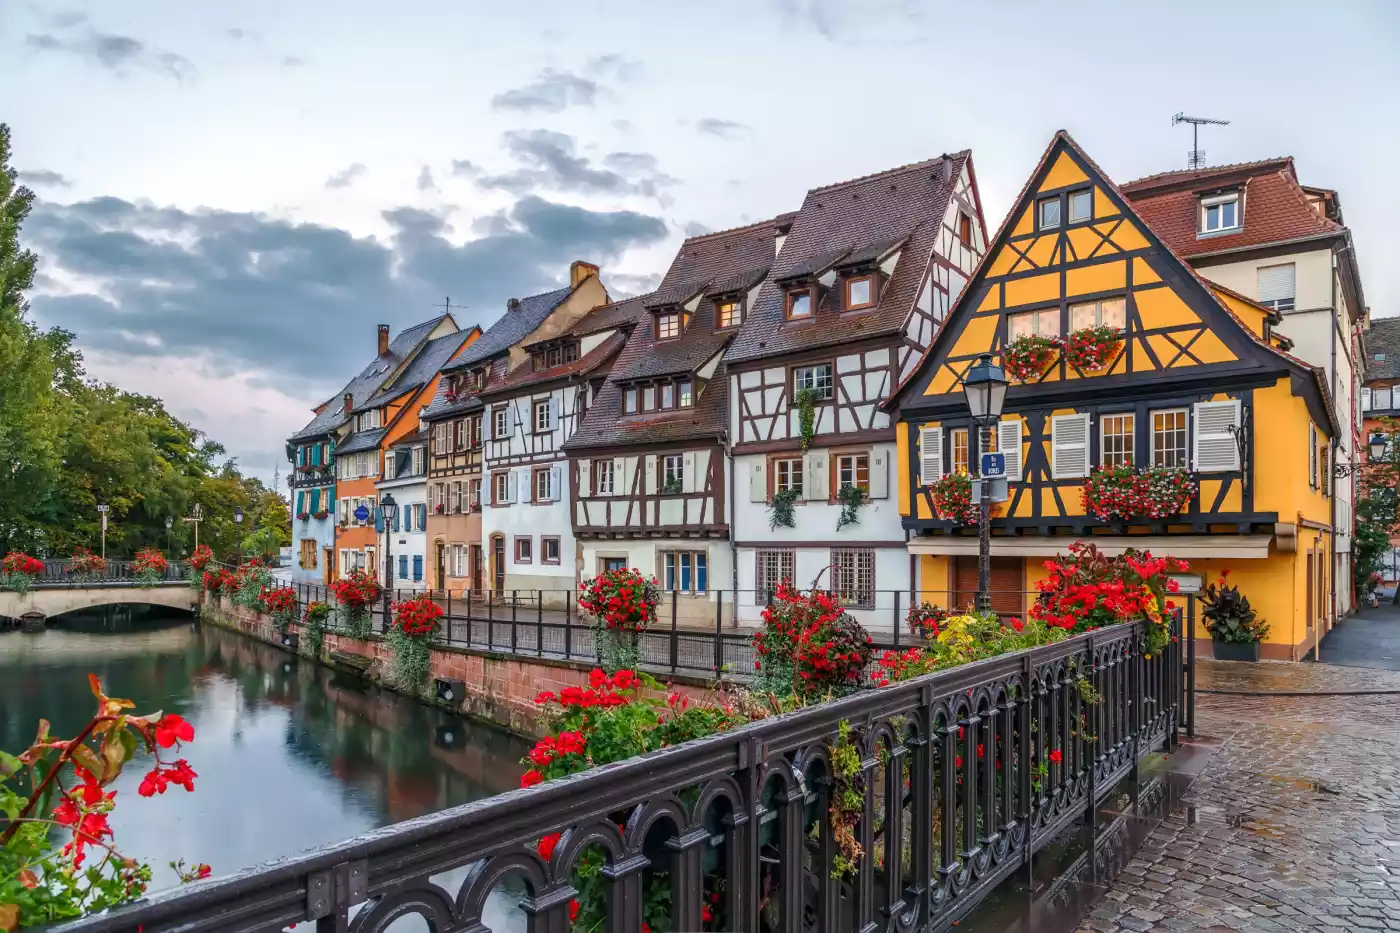 Enchanting European village